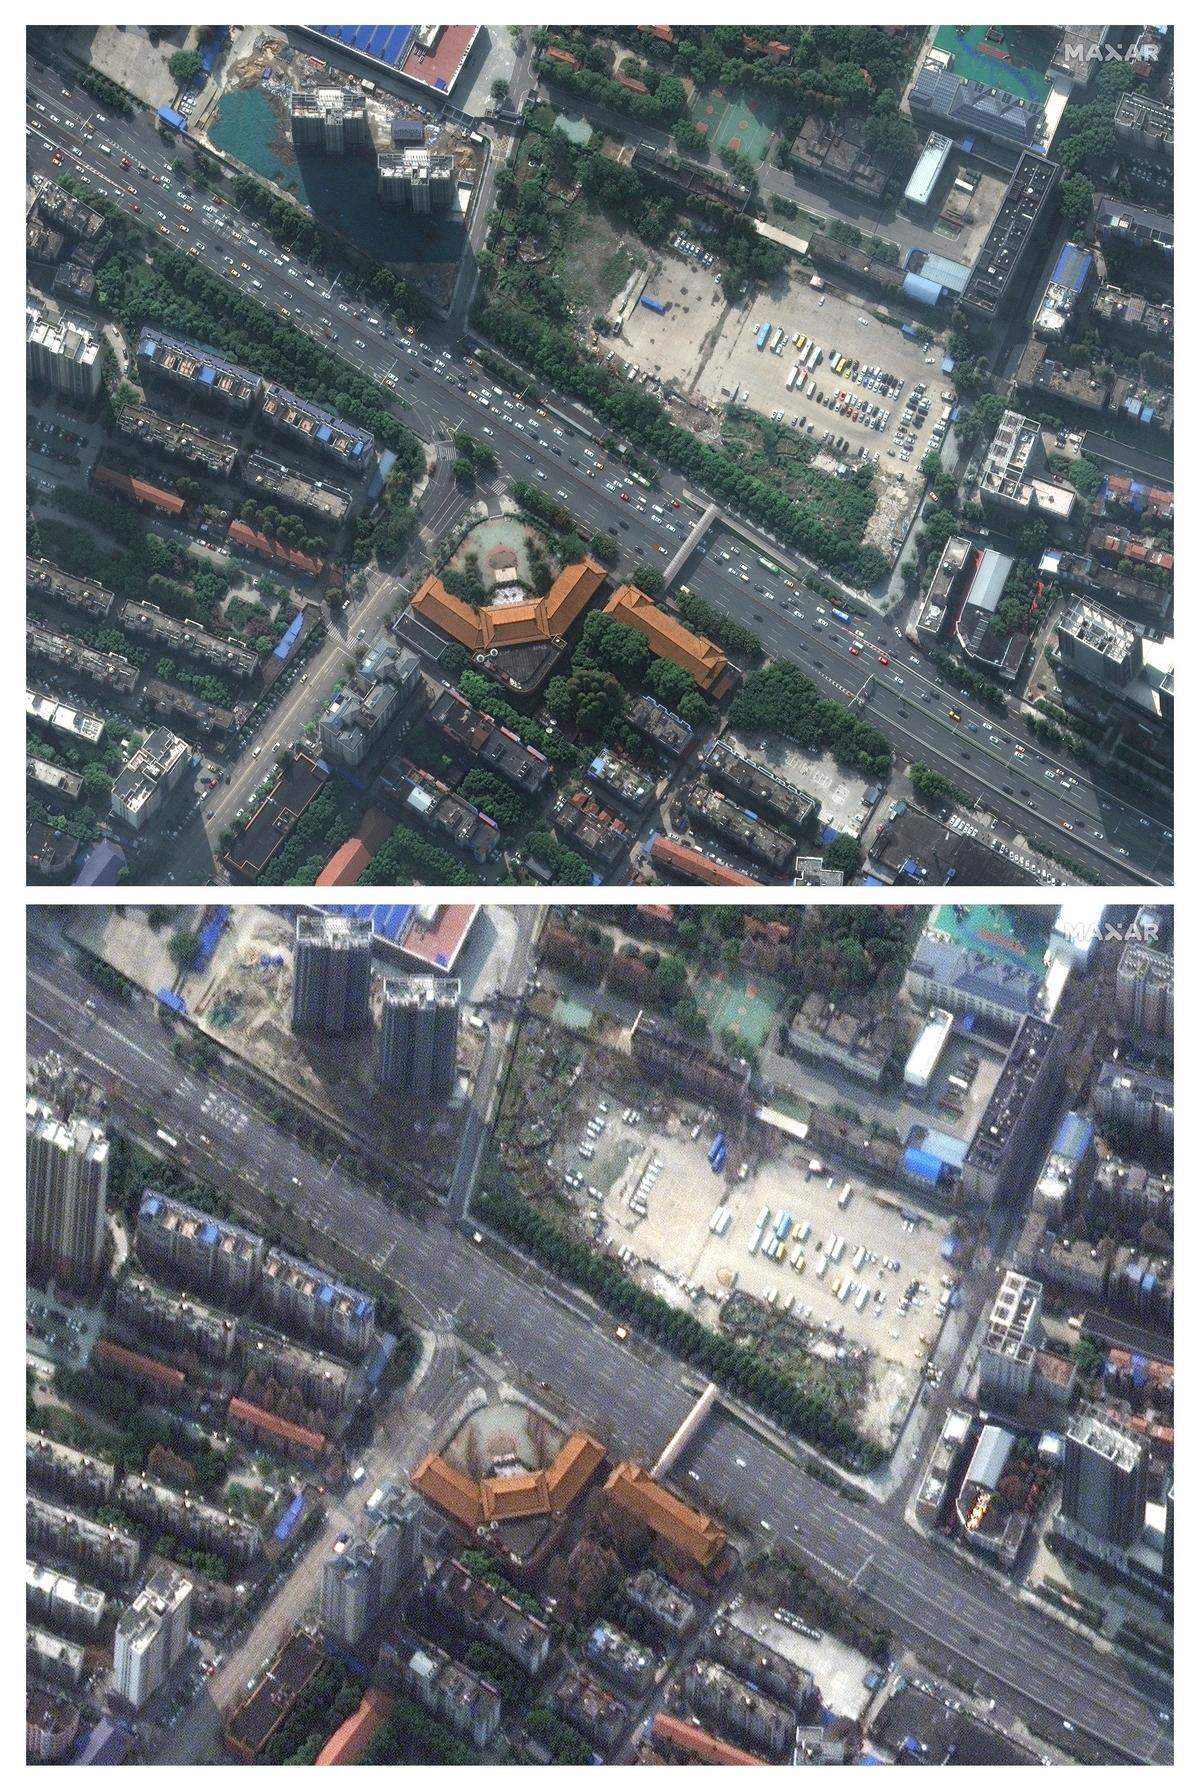 Die selbe Straße in Wuhan, aus einer anderen Perspektive.